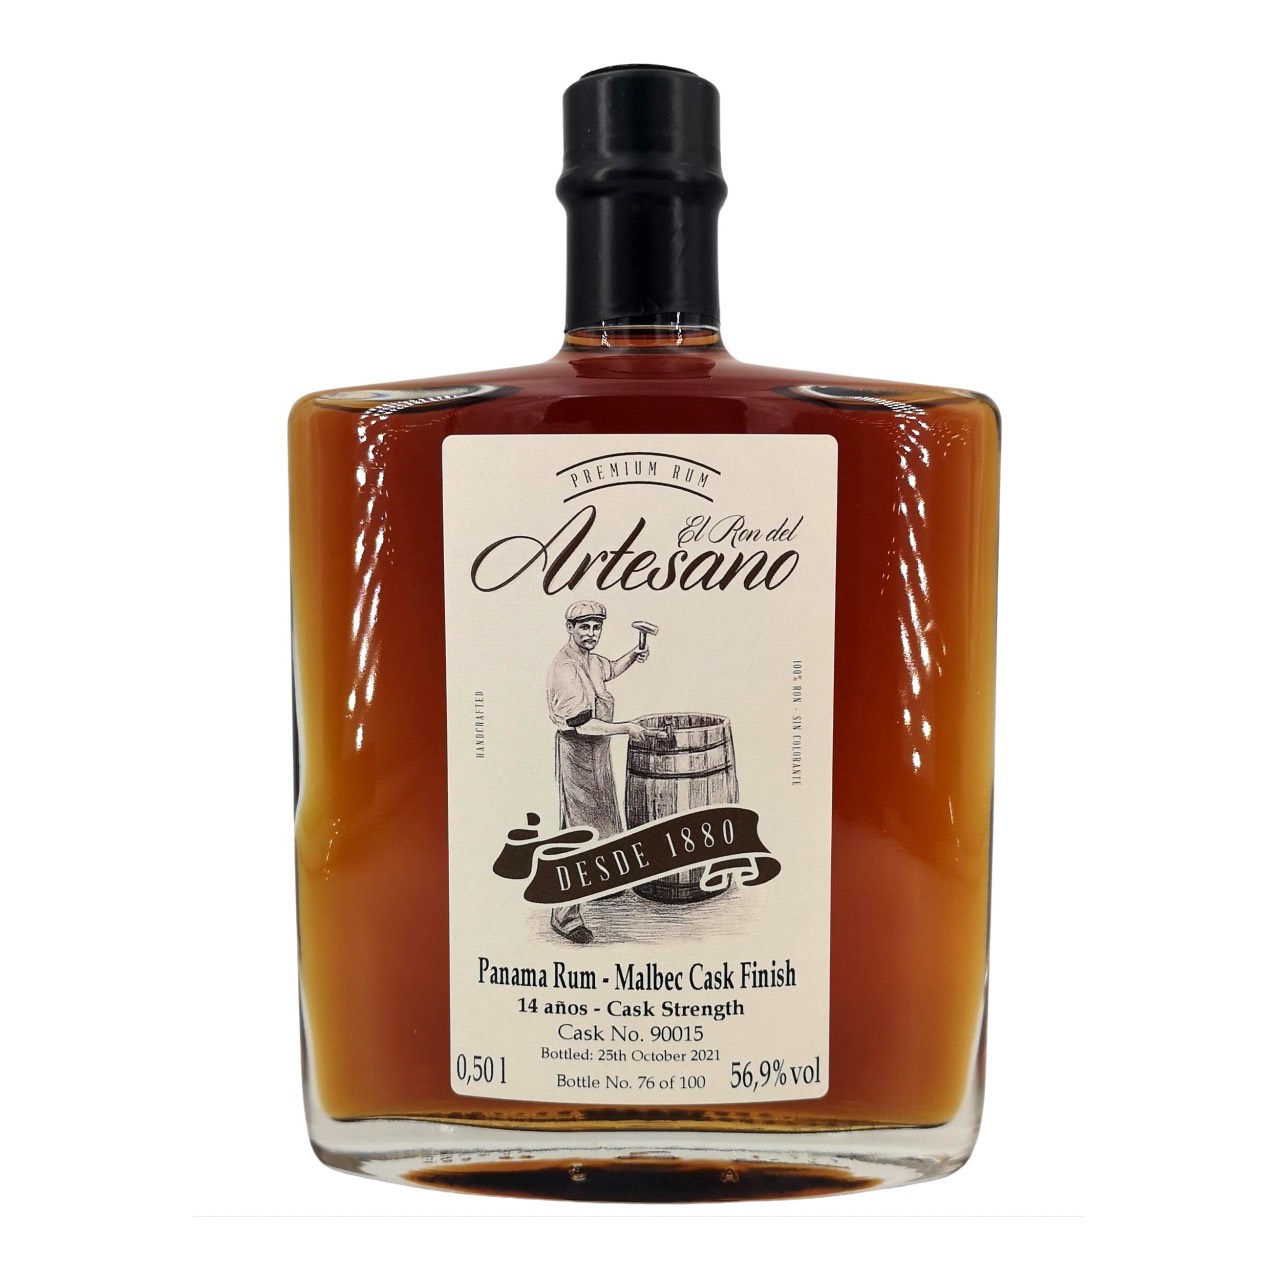 Bottle image of Panama Rum - Malbec Cask Finish